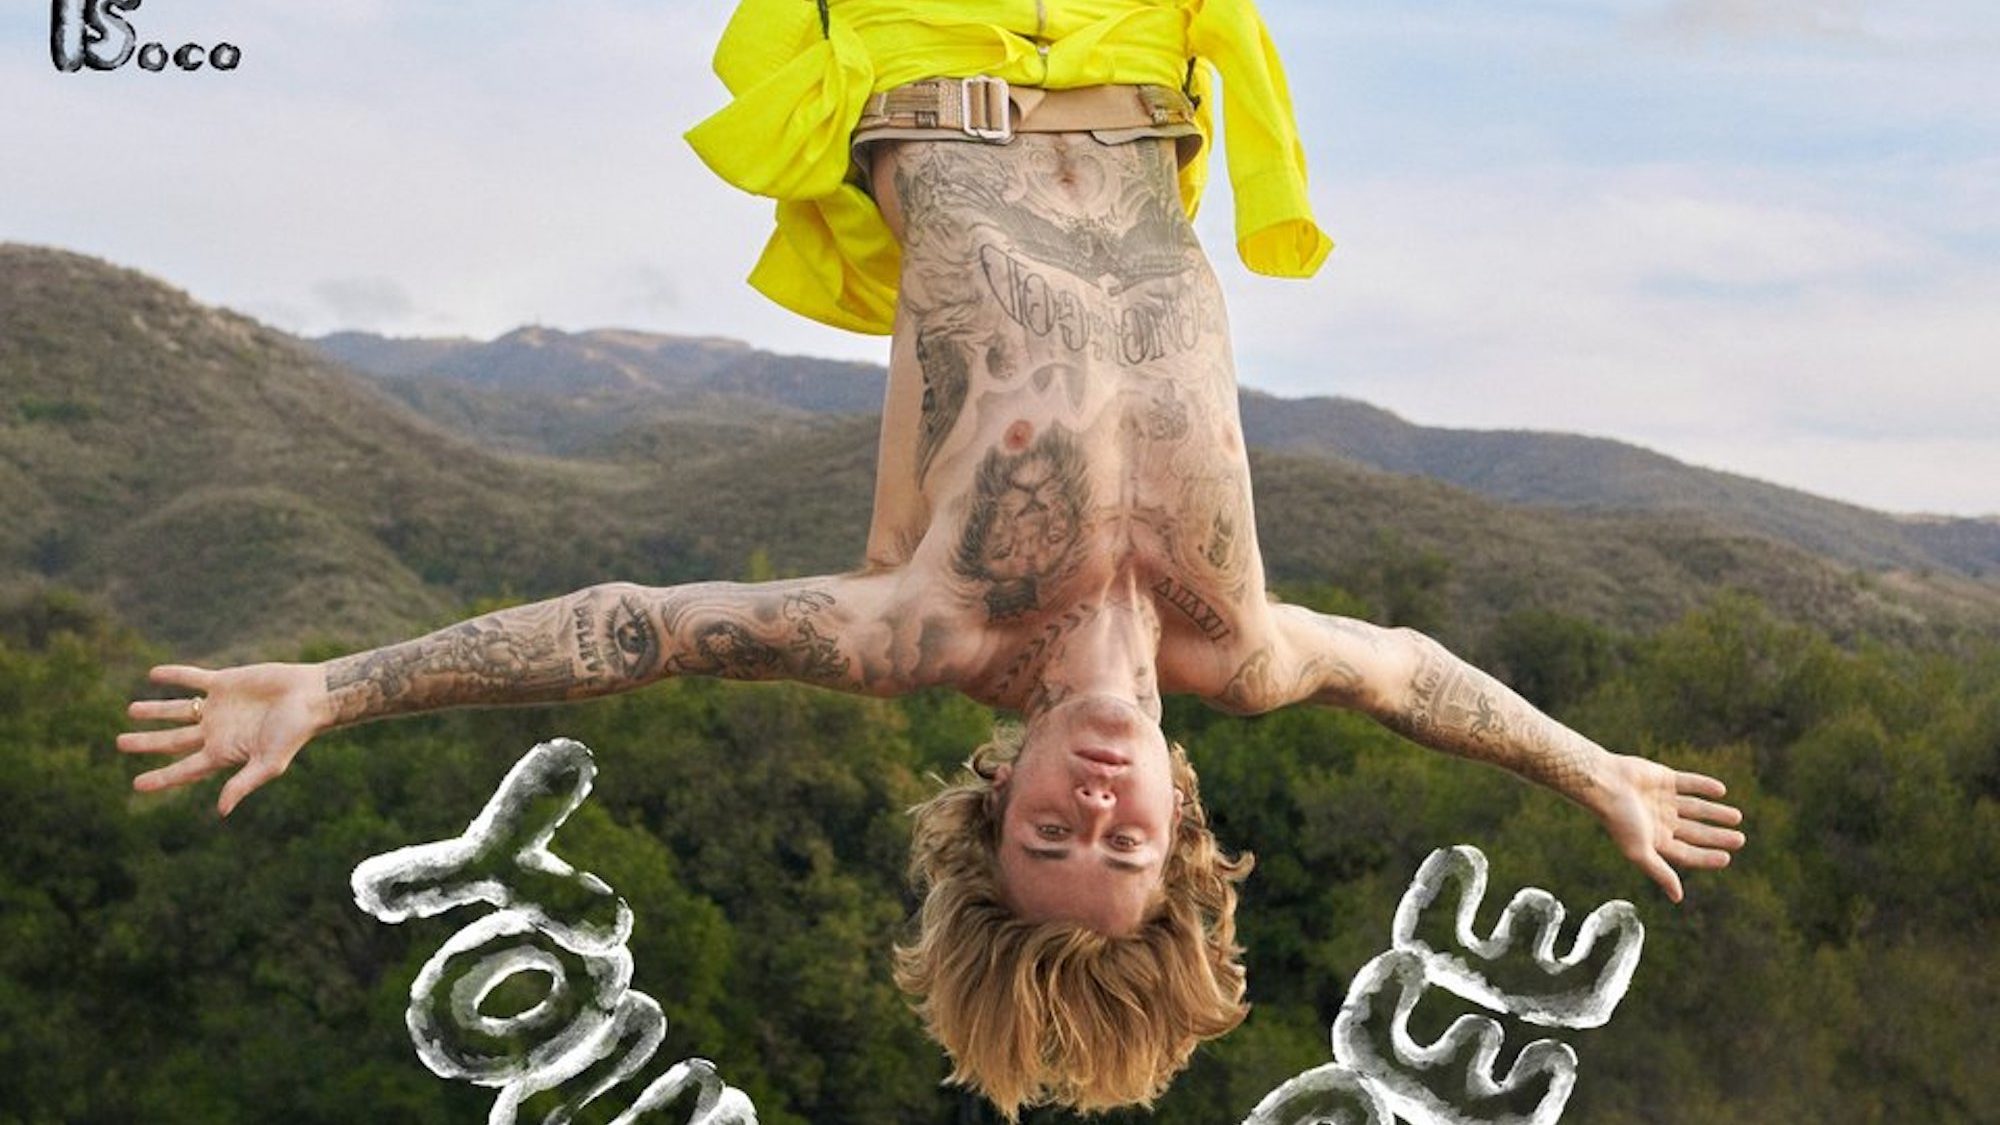 Fejjel lefelé, kötélen lógatva fotózták Justin Biebert a GQ májusi számához